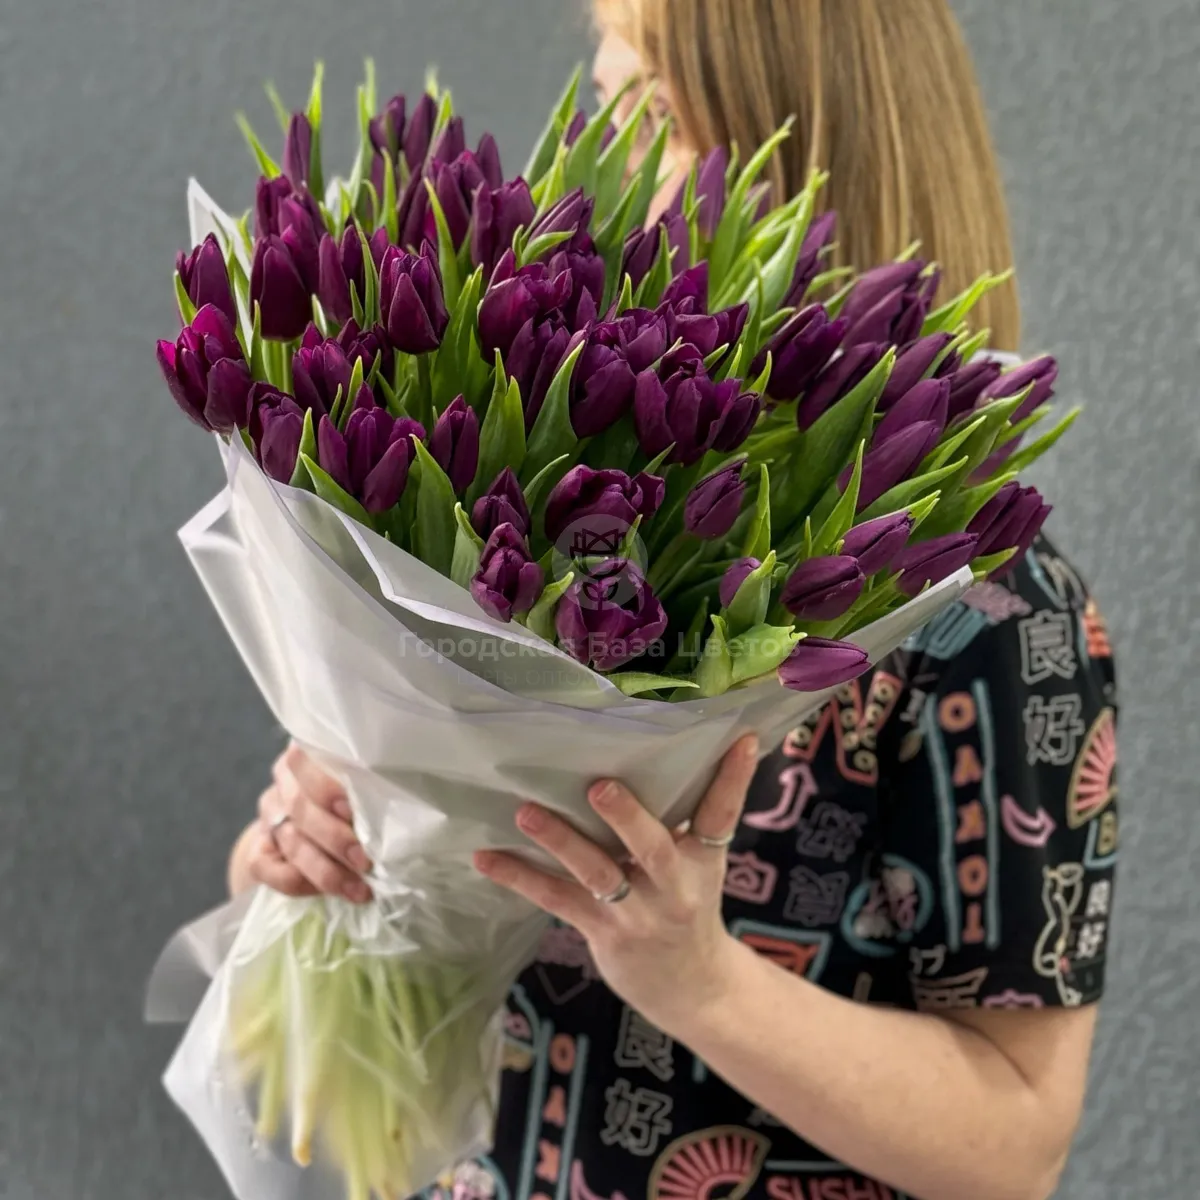 59 бордово-фиолетовых тюльпанов